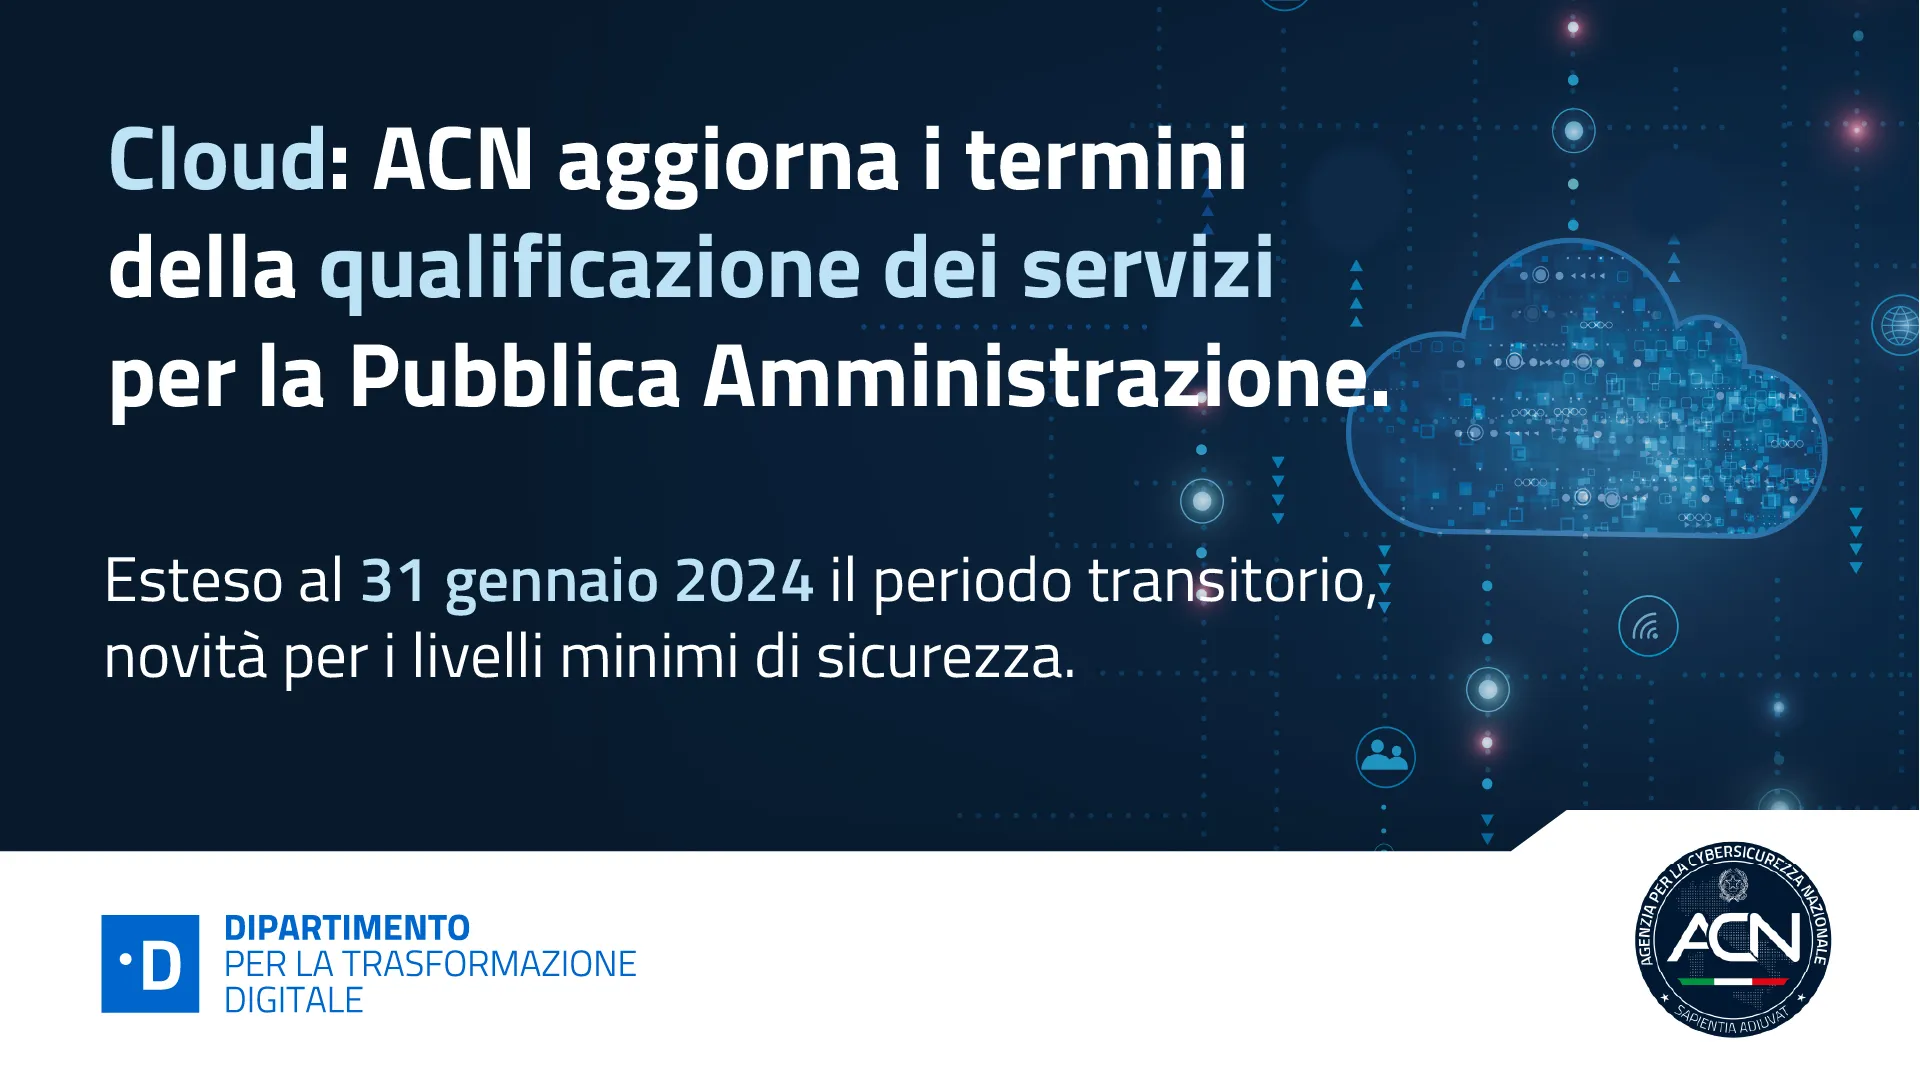 Proroga del periodo transitorio al 31 gennaio 2024 e razionalizzazione dei livelli minimi richiesti per le infrastrutture e i servizi cloud per la PA